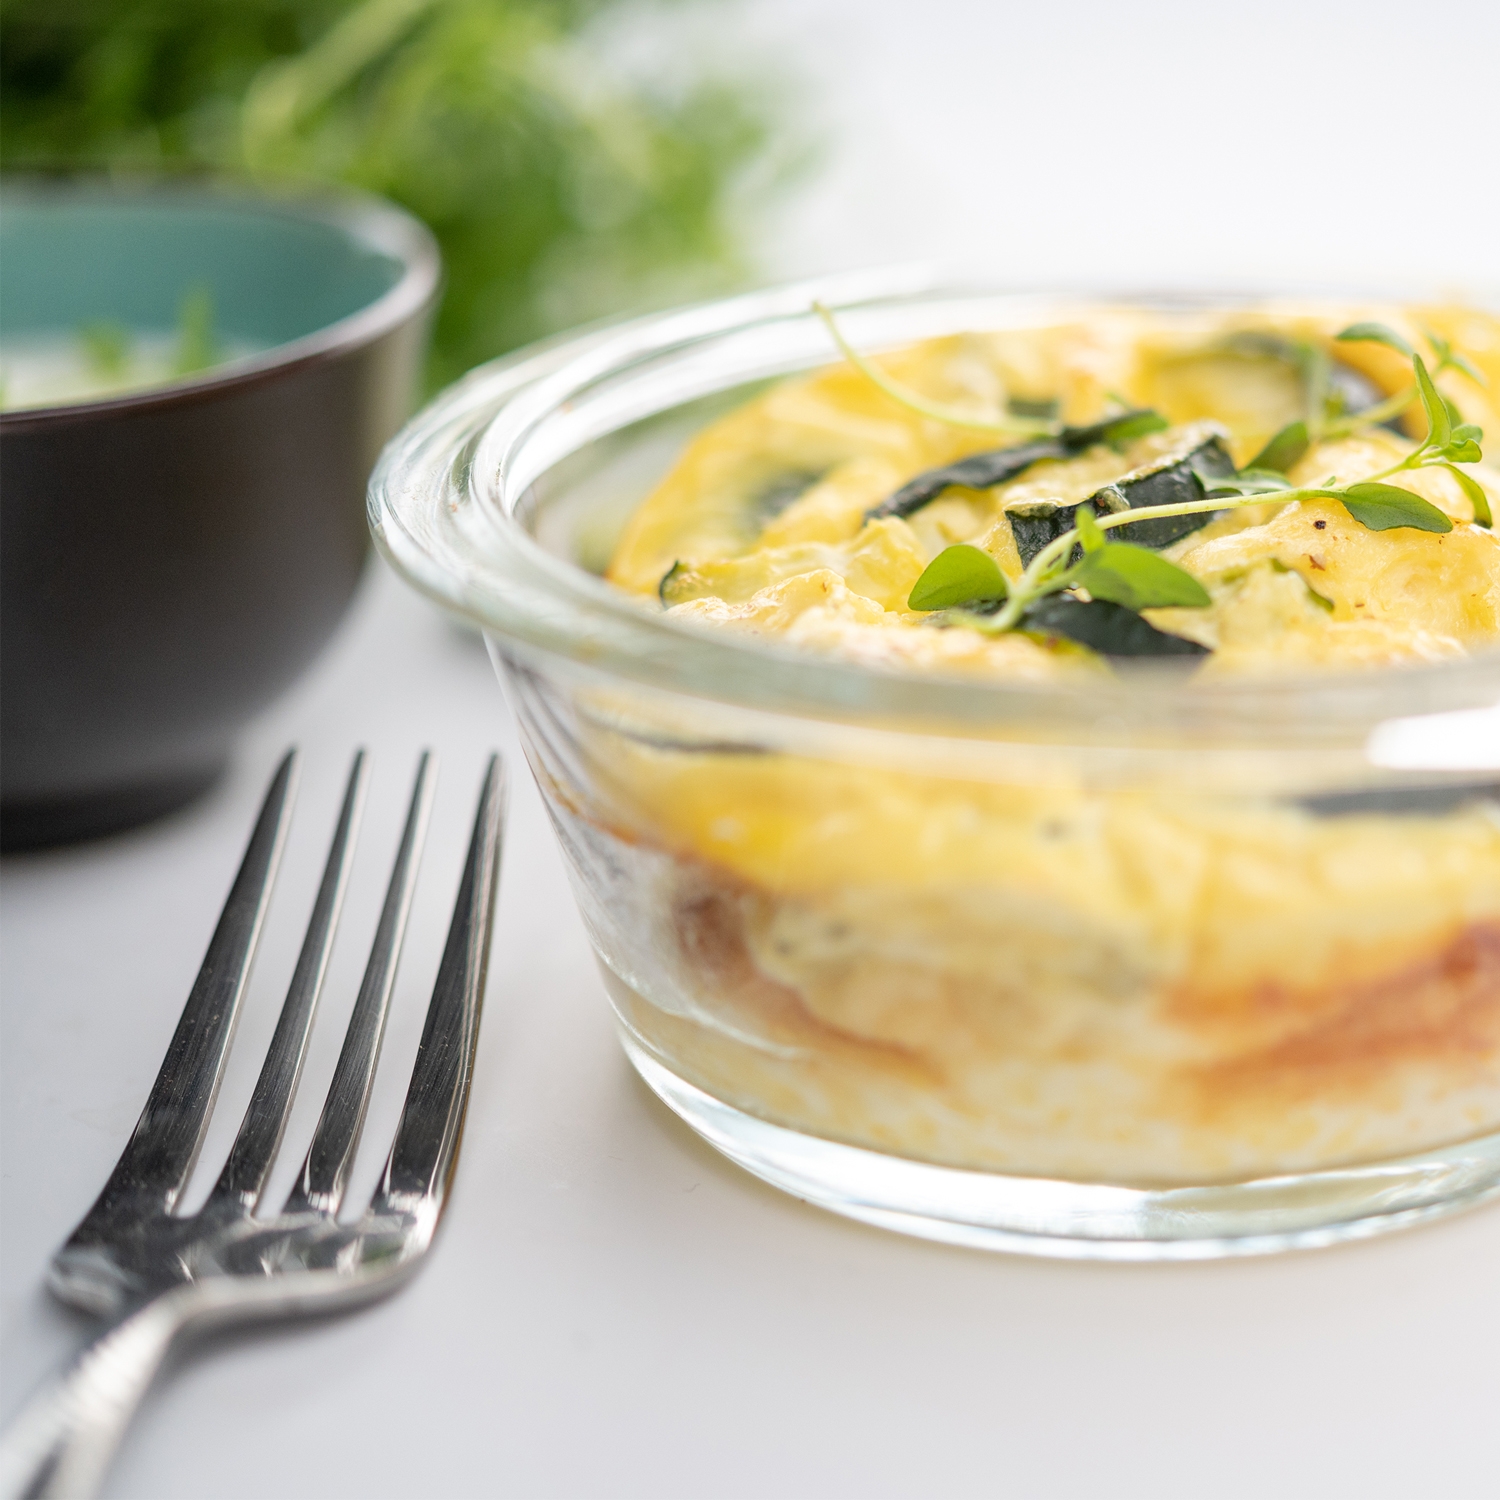 Photo culinaire flan de courgette, fourchette et grains de poivre au premier plan, salade et œuf à l’arrière plan, vue de face